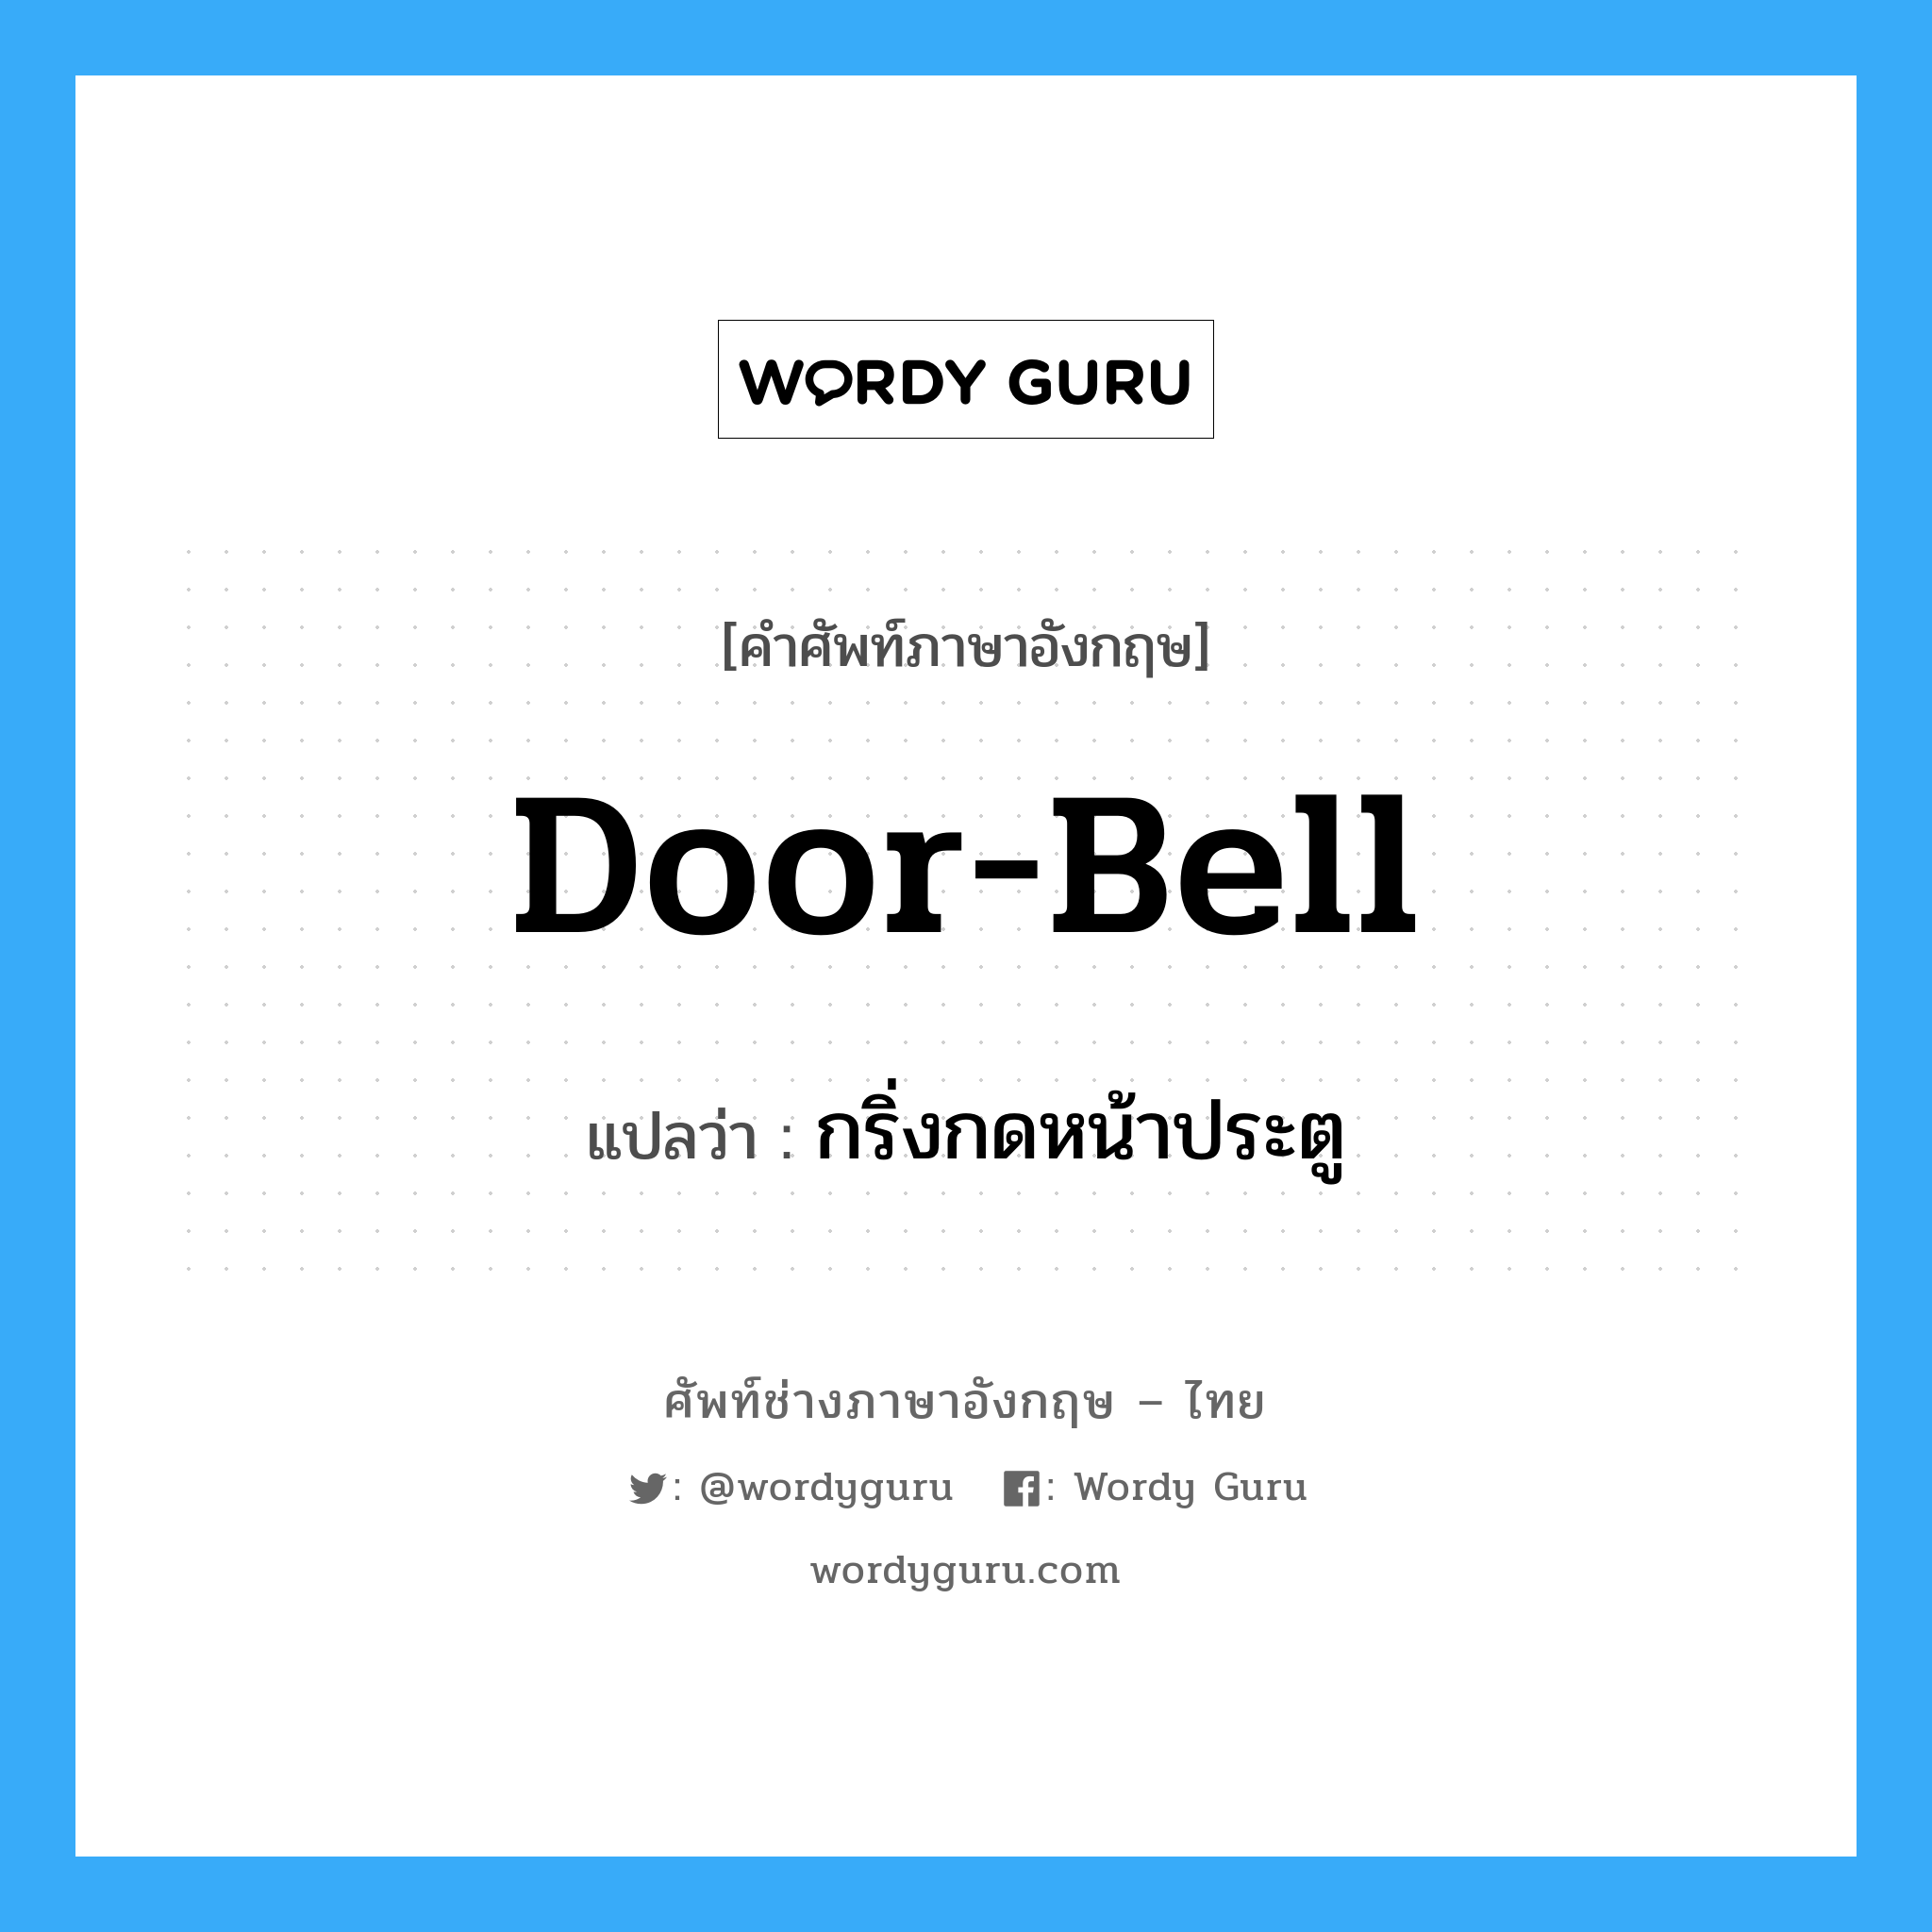 กริ่งกดหน้าประตู ภาษาอังกฤษ?, คำศัพท์ช่างภาษาอังกฤษ - ไทย กริ่งกดหน้าประตู คำศัพท์ภาษาอังกฤษ กริ่งกดหน้าประตู แปลว่า door-bell